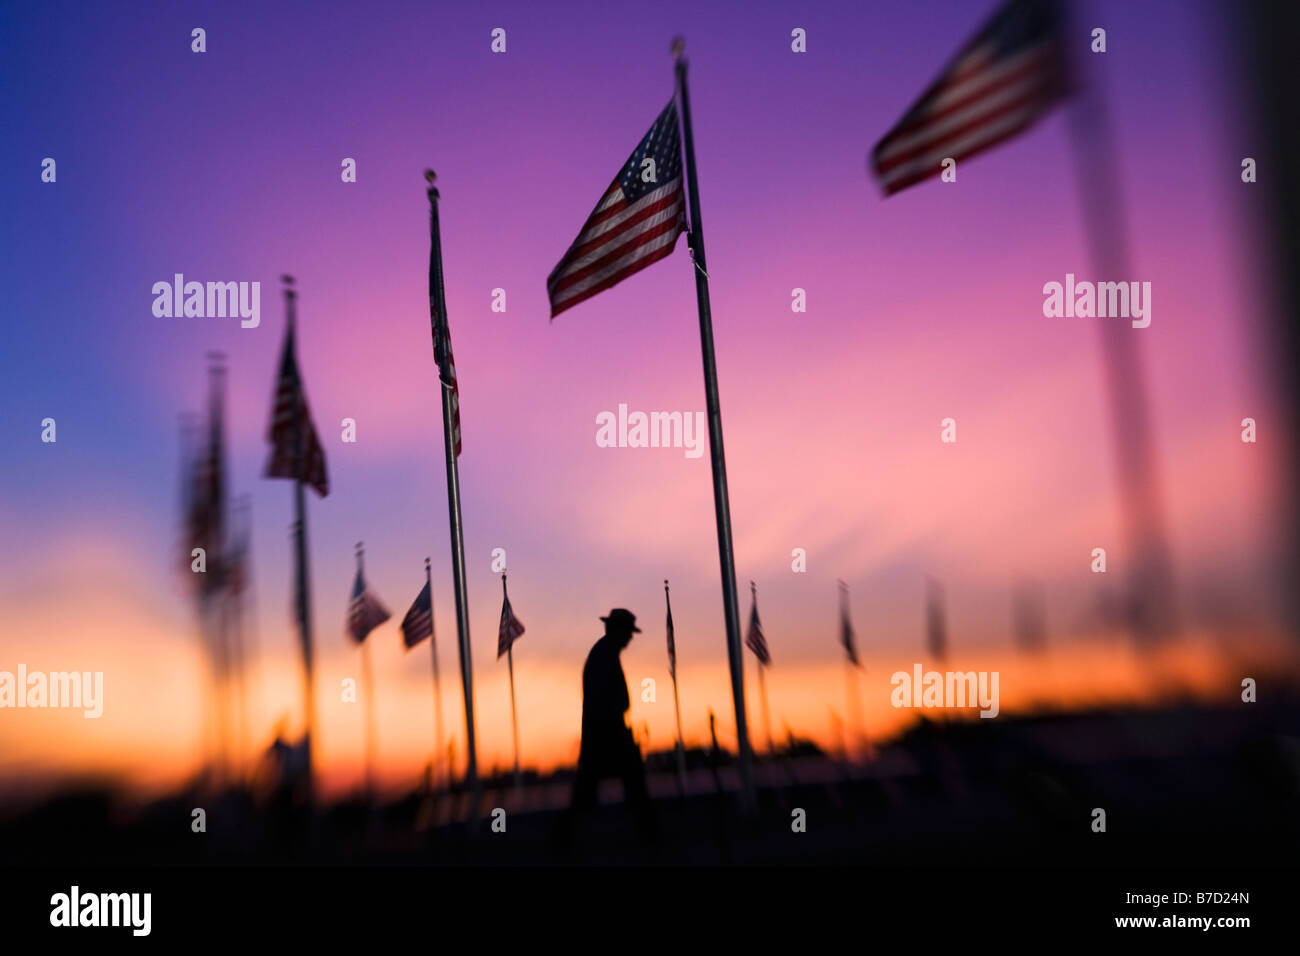 Flags surrounding the Washington Monument at sunset, Washington DC, USA Stock Photo